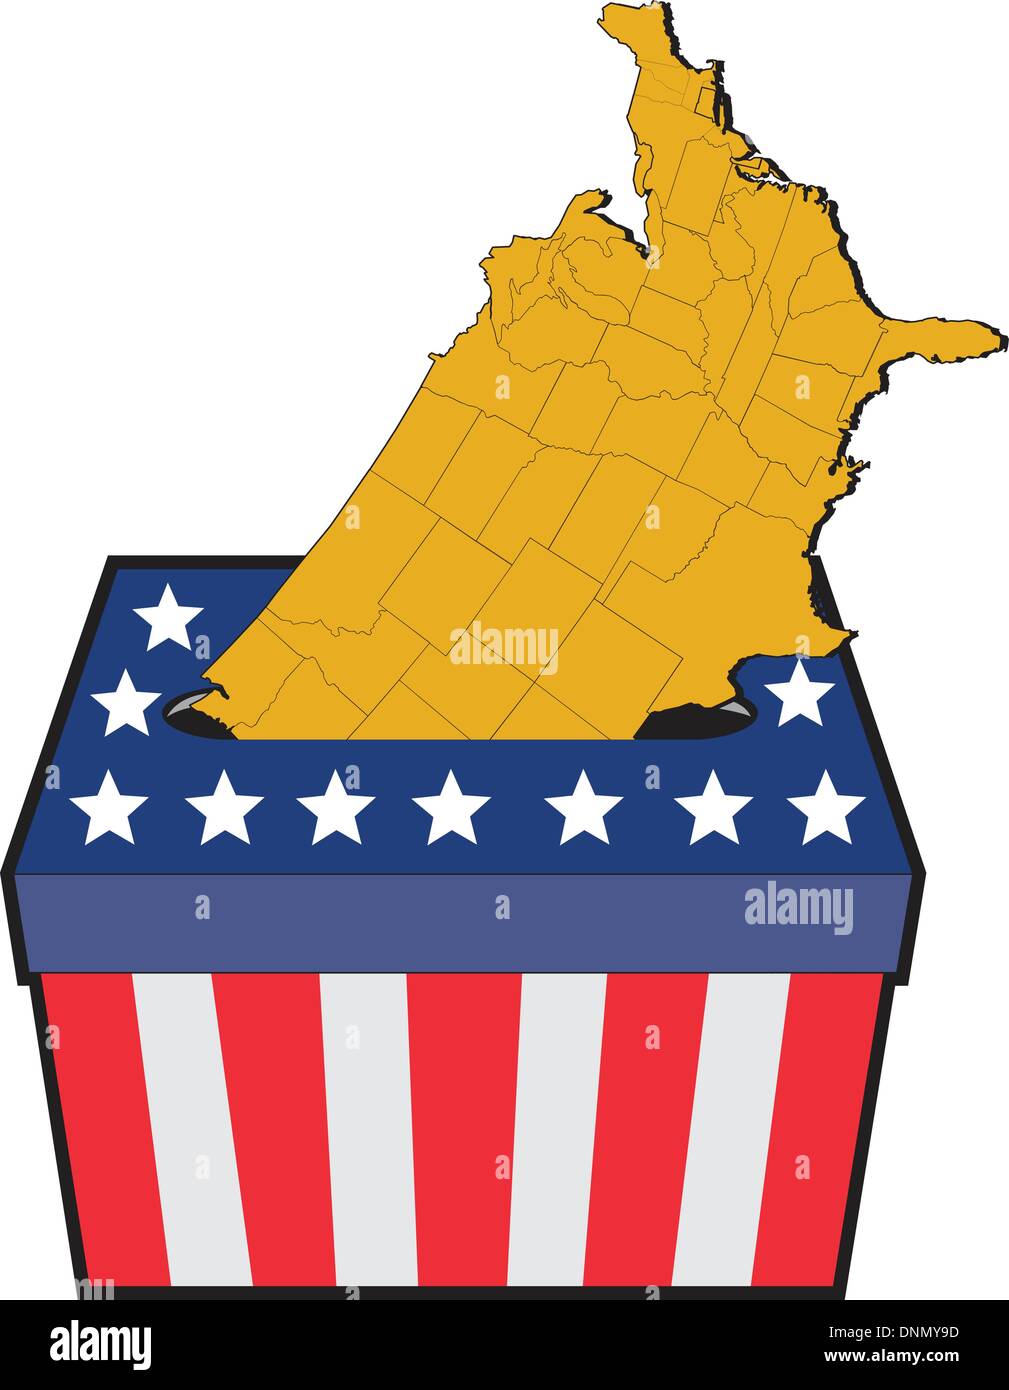 Illustrazione di un elezione urne con American stelle e strisce della bandiera e la mappa degli Stati Uniti d'America su sfondo isolato Illustrazione Vettoriale